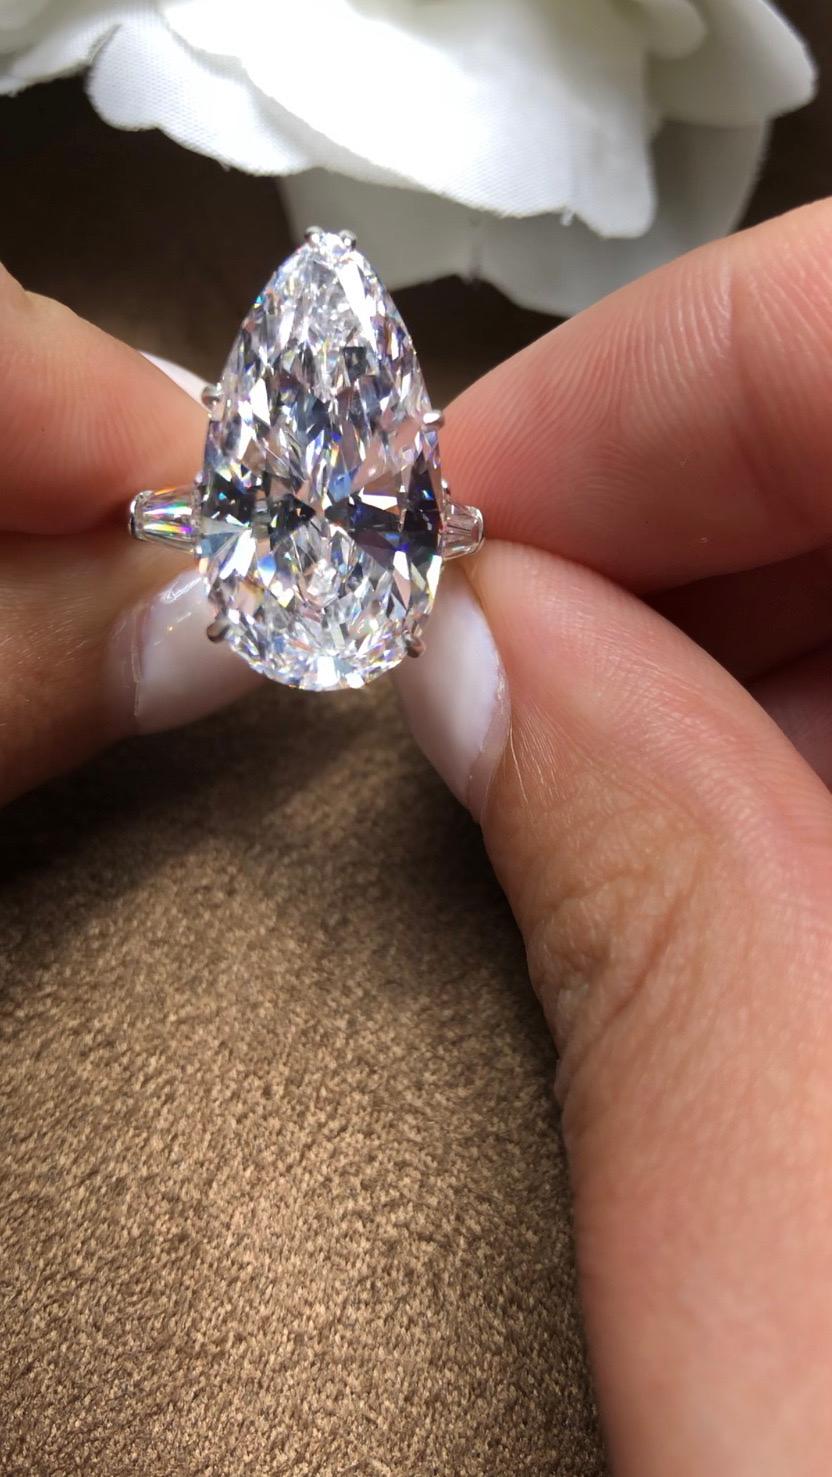 Morcha Diamonds possède l'un des plus grands stocks privés de diamants D Flawless de plus de 5 ct. 

Bague MORCHA 10ct D Flawless Pear Shape Diamond, sertie de 2 diamants baguette.
Découpé selon les normes les plus strictes en matière de brillance